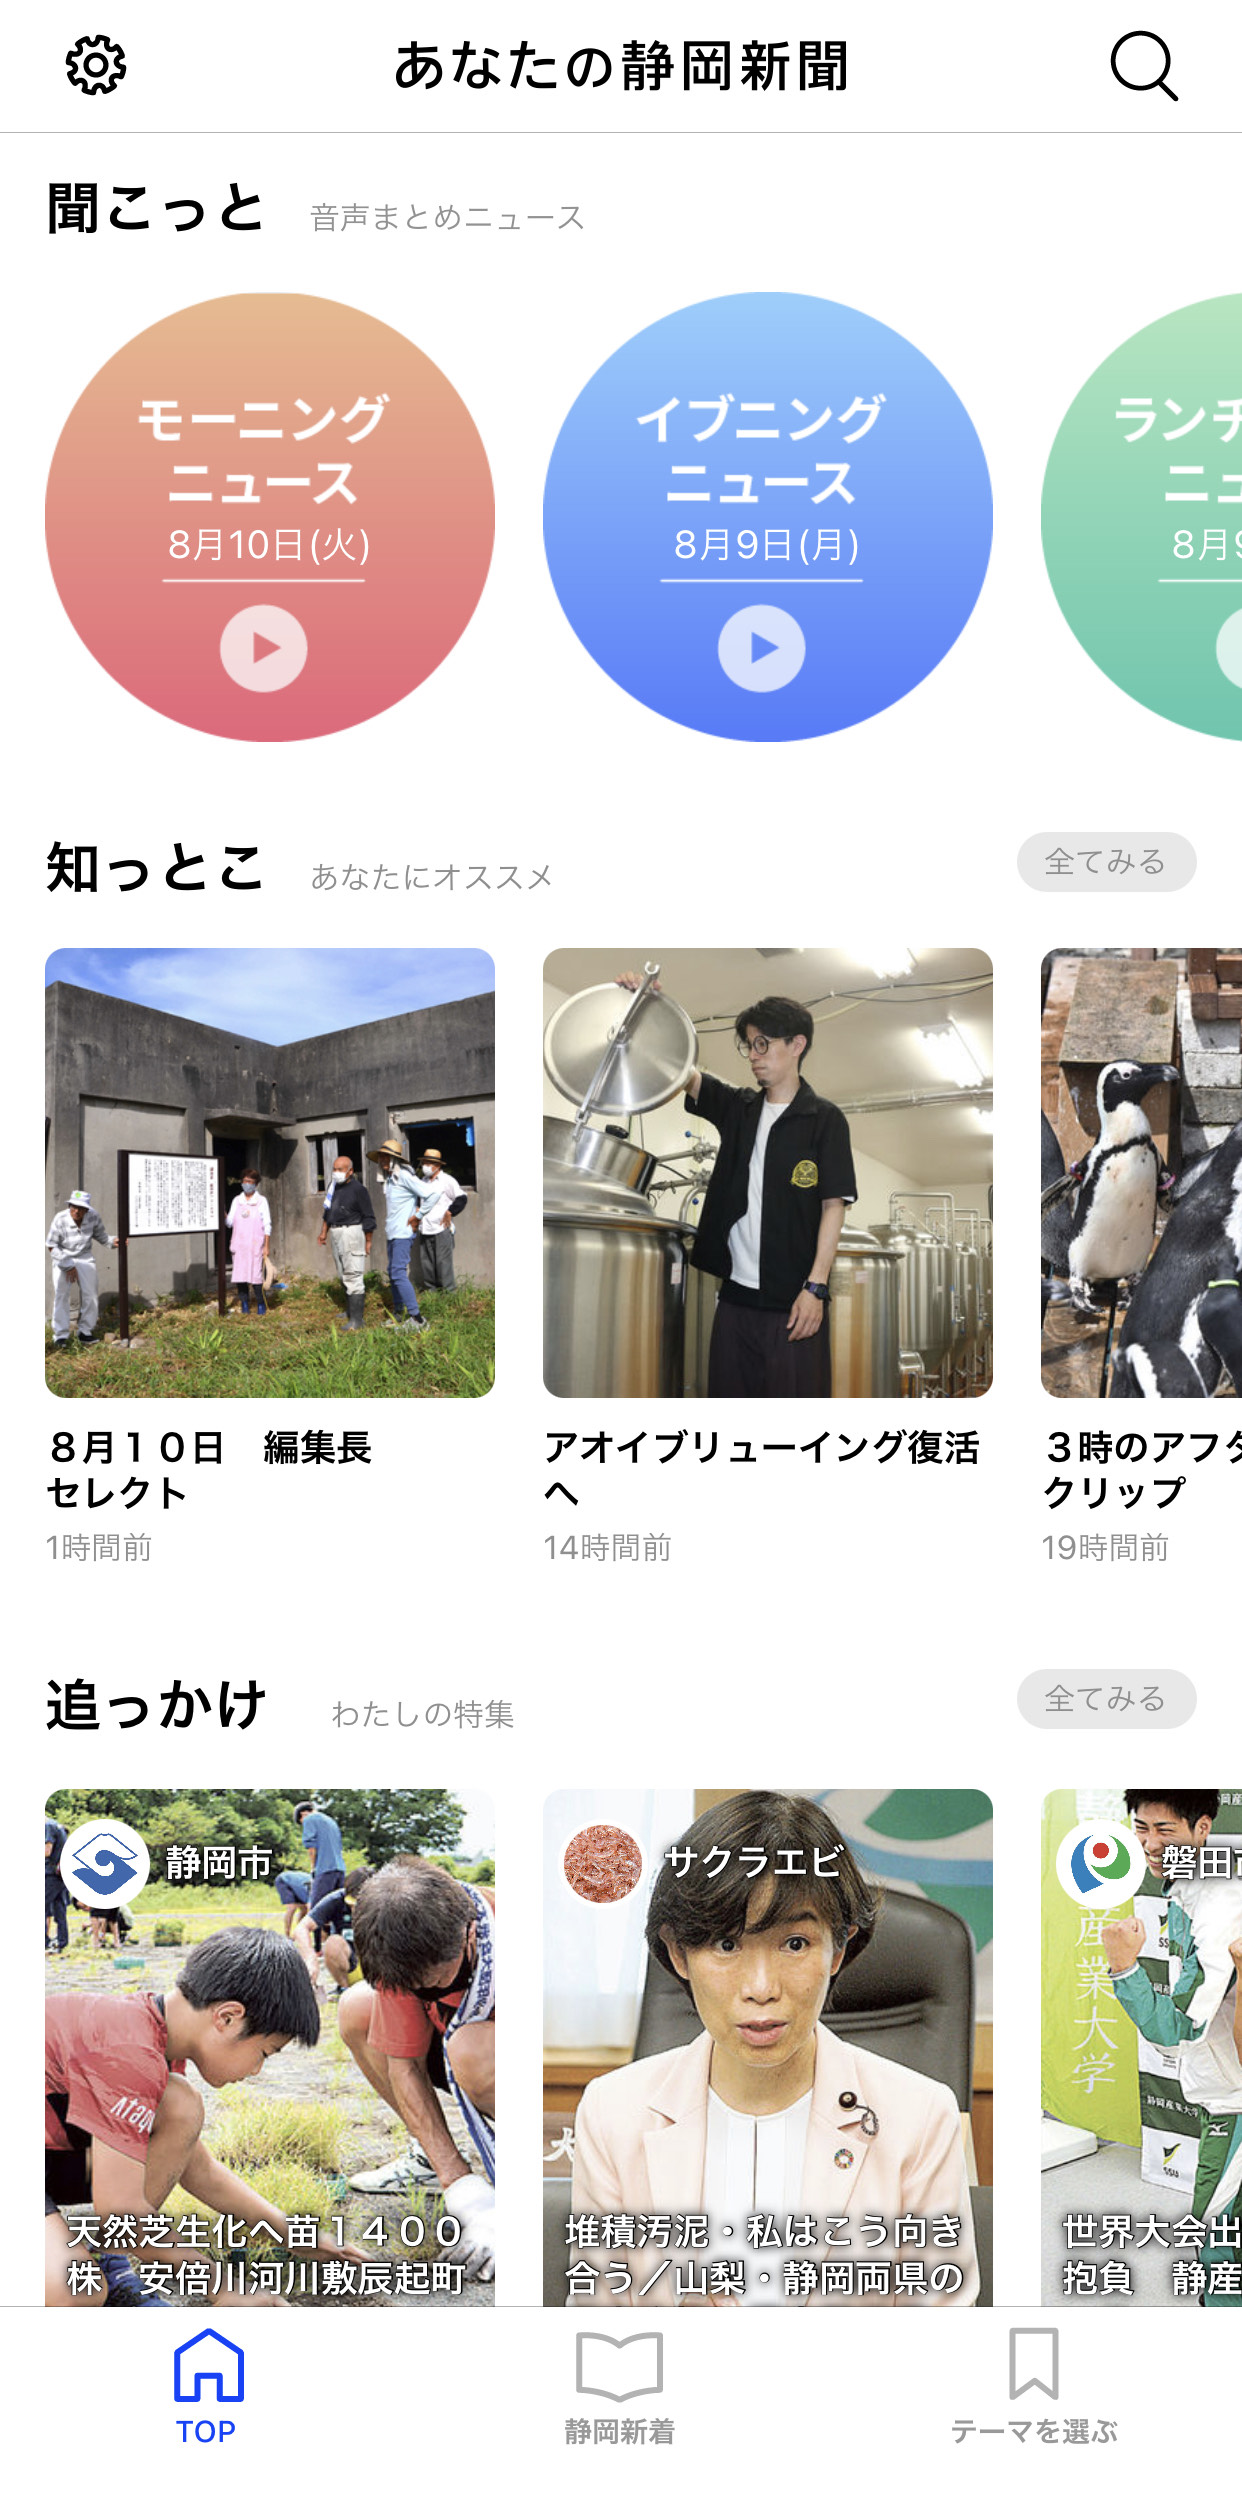 「あなたの静岡新聞」スマートフォンアプリのTOP画面